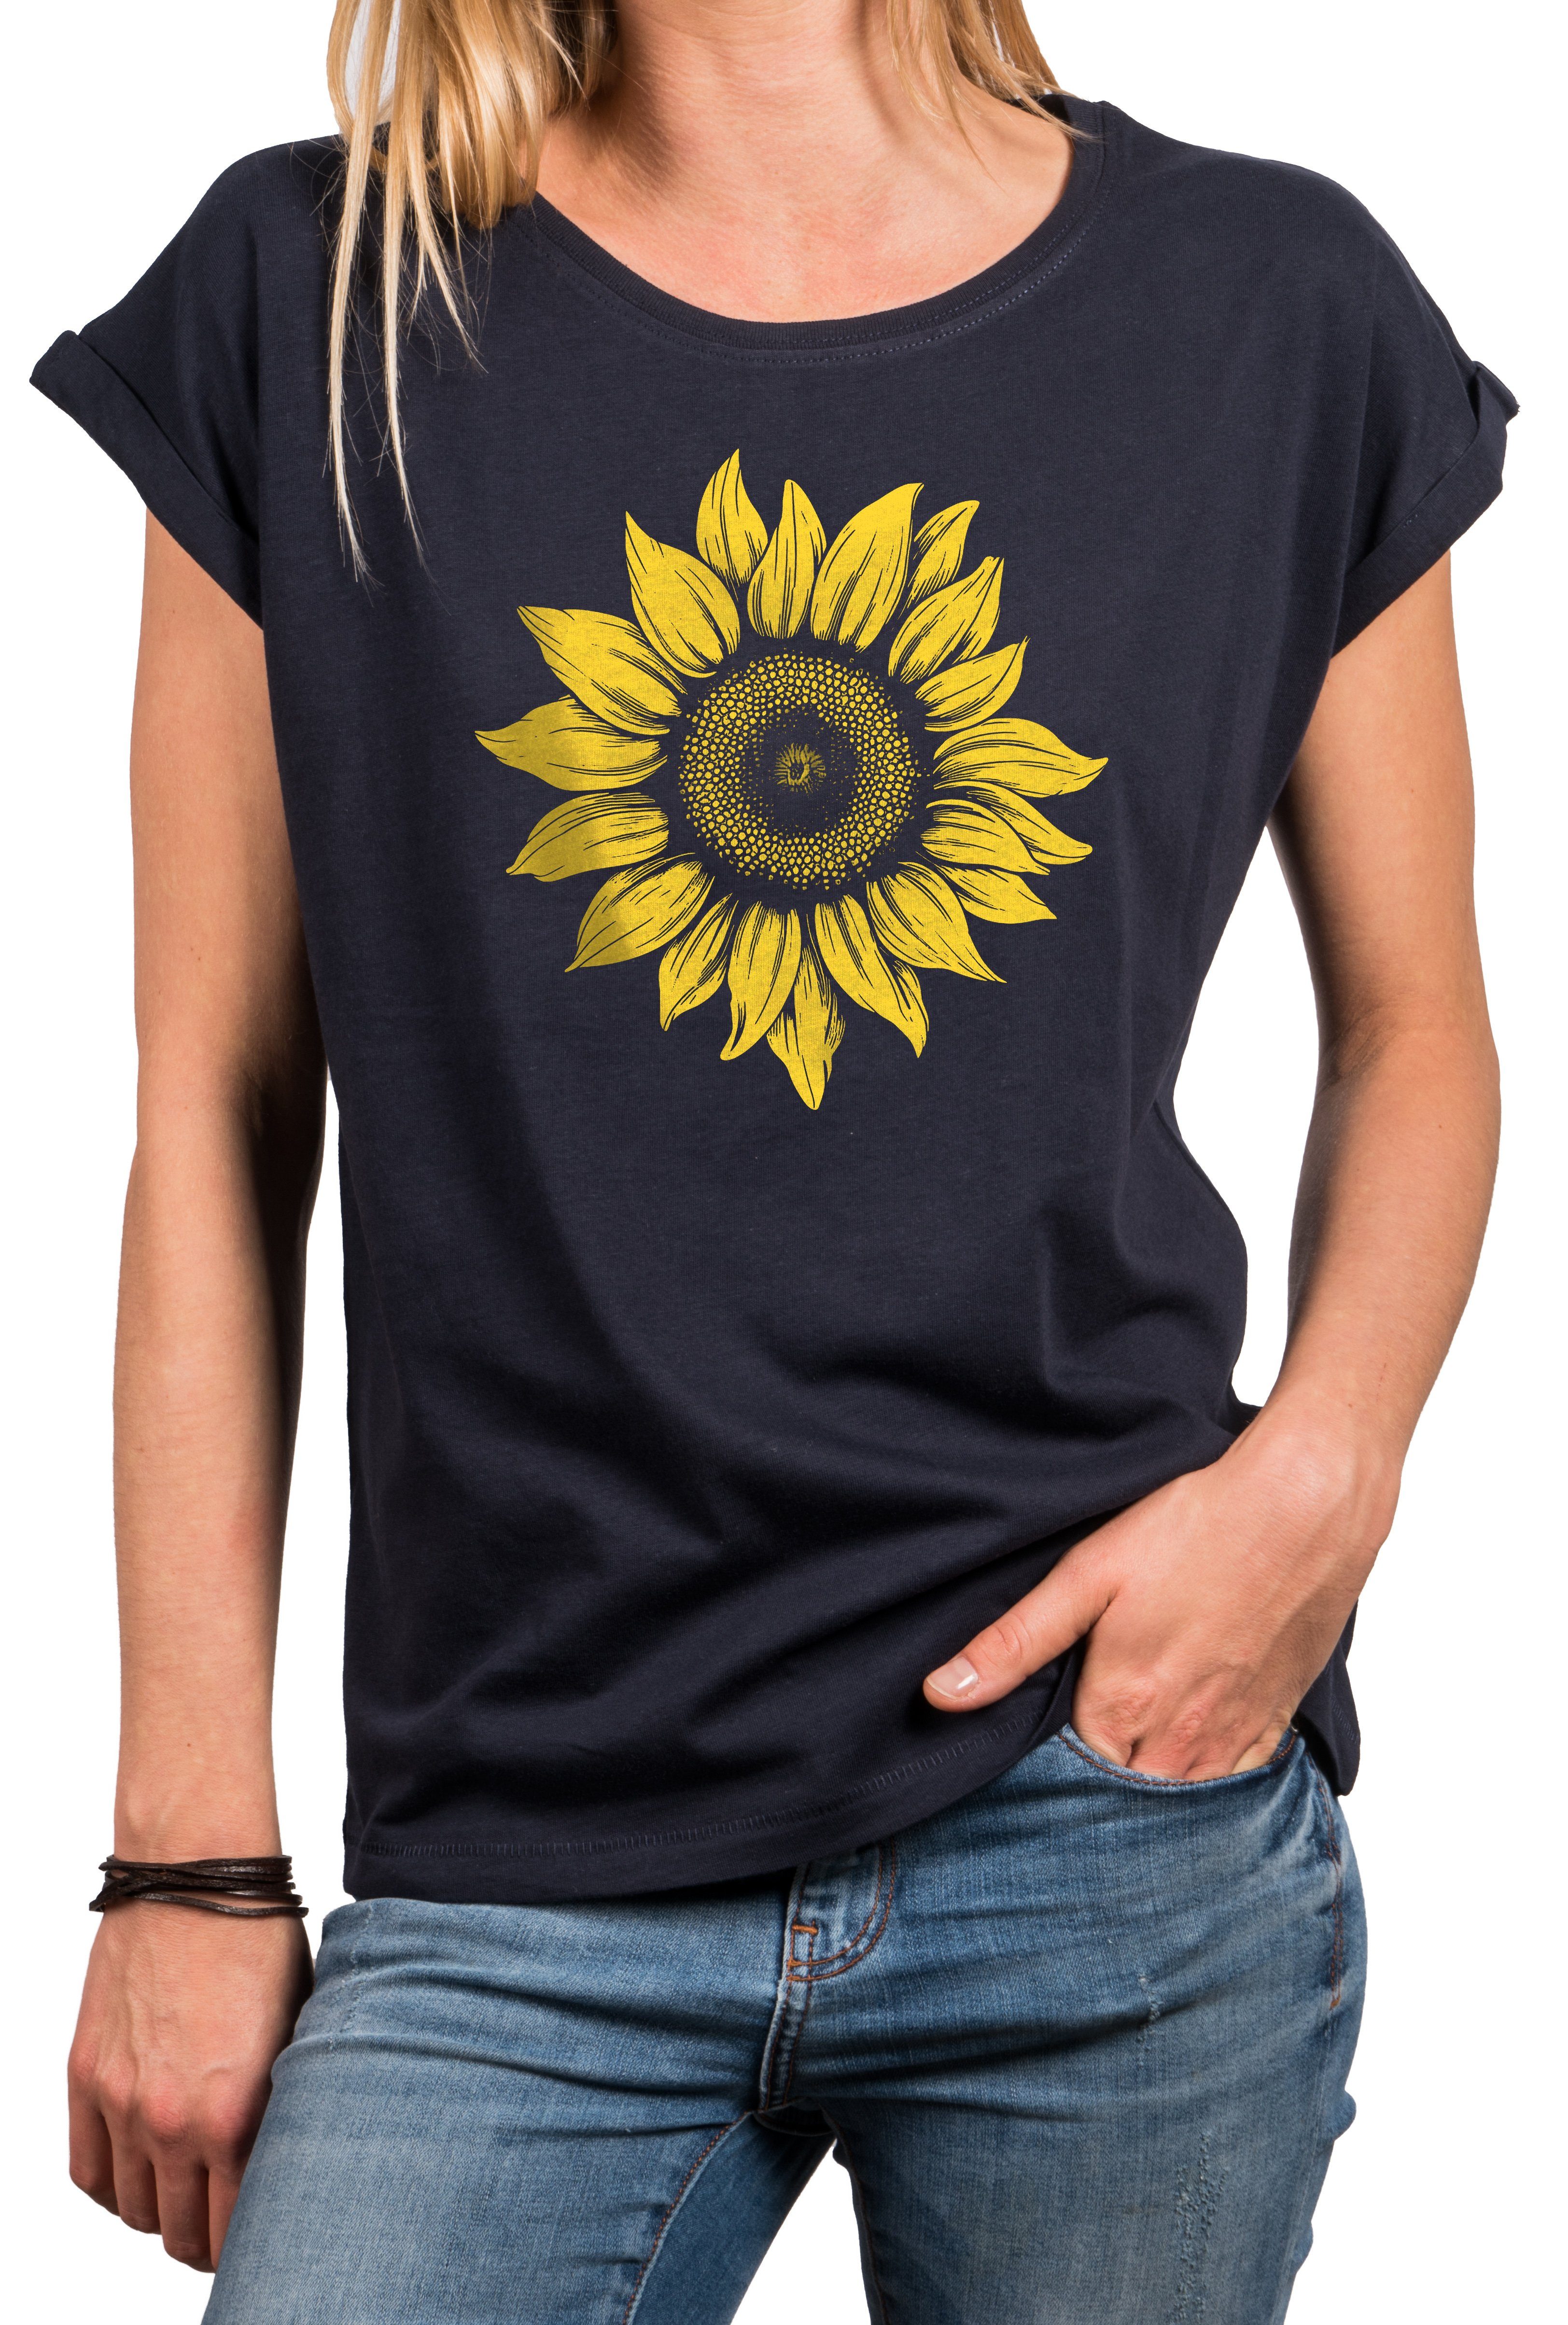 Top Blumen Baumwolle, Blau Sommer Motiv MAKAYA Größen Sonnenblume Blumenmuster große Blumenpint Damen Print-Shirt